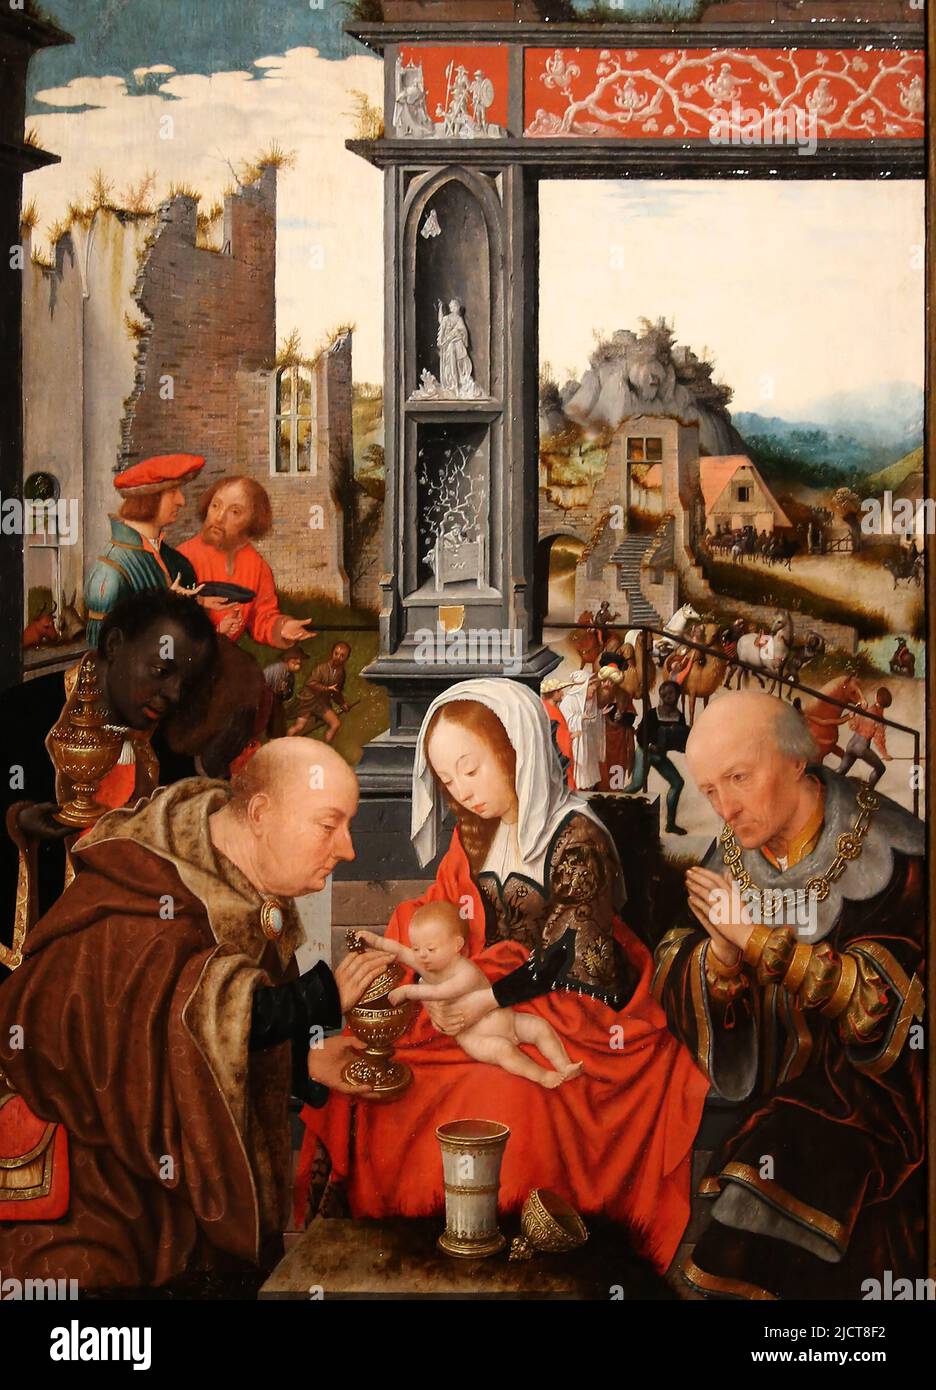 L'adoration des Mages, par Jan Jansz Mostaert (c. 1474-1552). Haarlem, c. 1520-1525. Huile sur le panneau. Rijksmuseum. Amsterdam. Pays-Bas. Banque D'Images